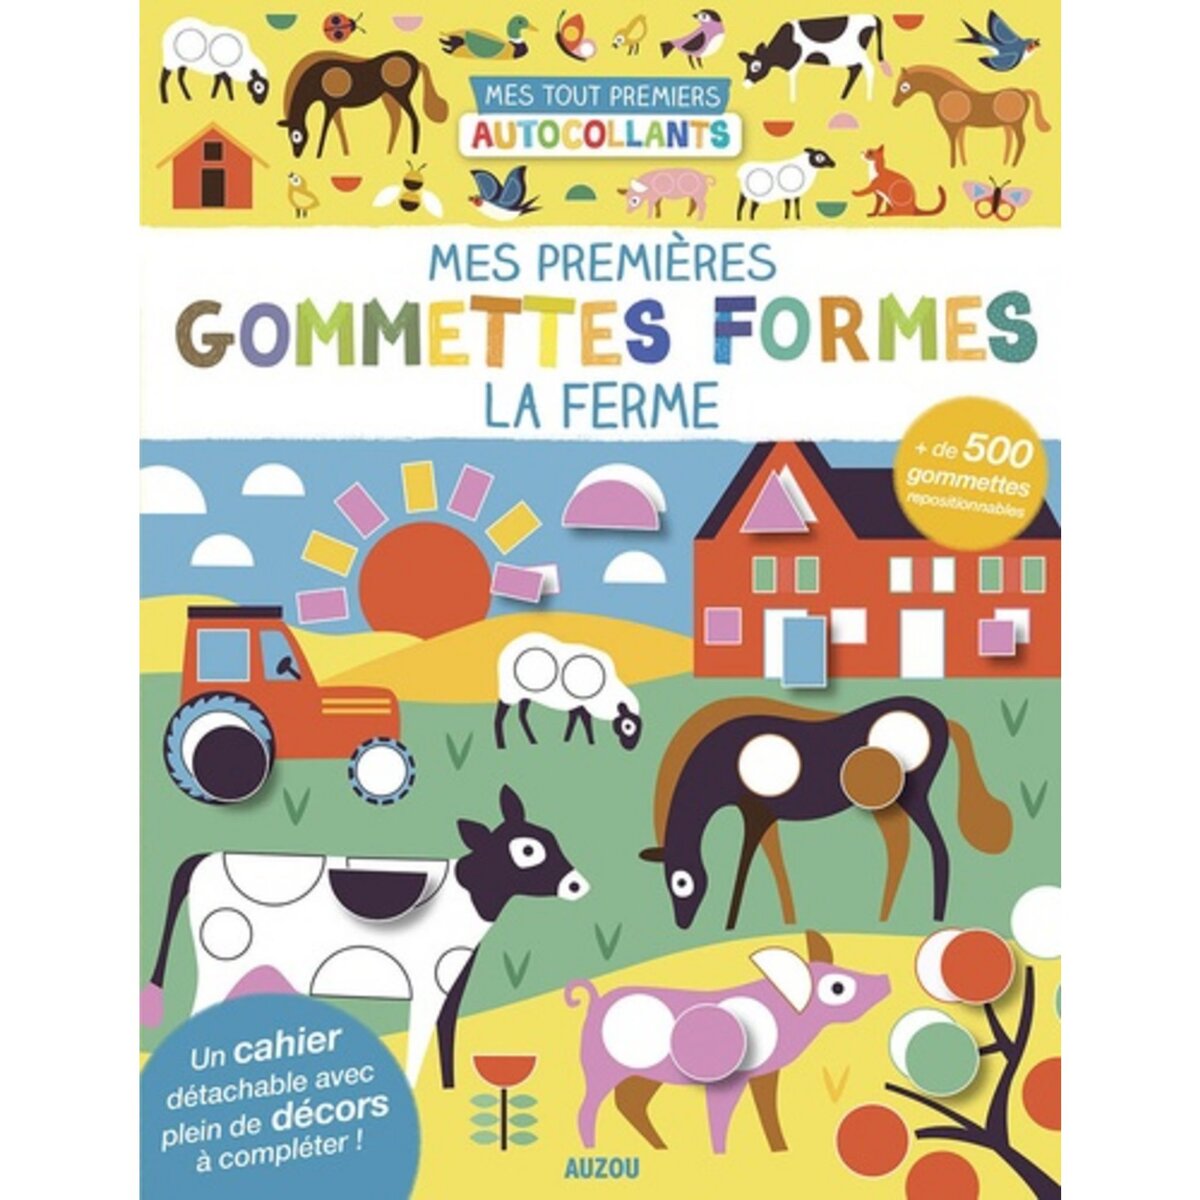  MES PREMIERES GOMMETTES FORMES LA FERME. AVEC + DE 500 GOMMETTES REPOSITIONNABLES, Taylor Nadia